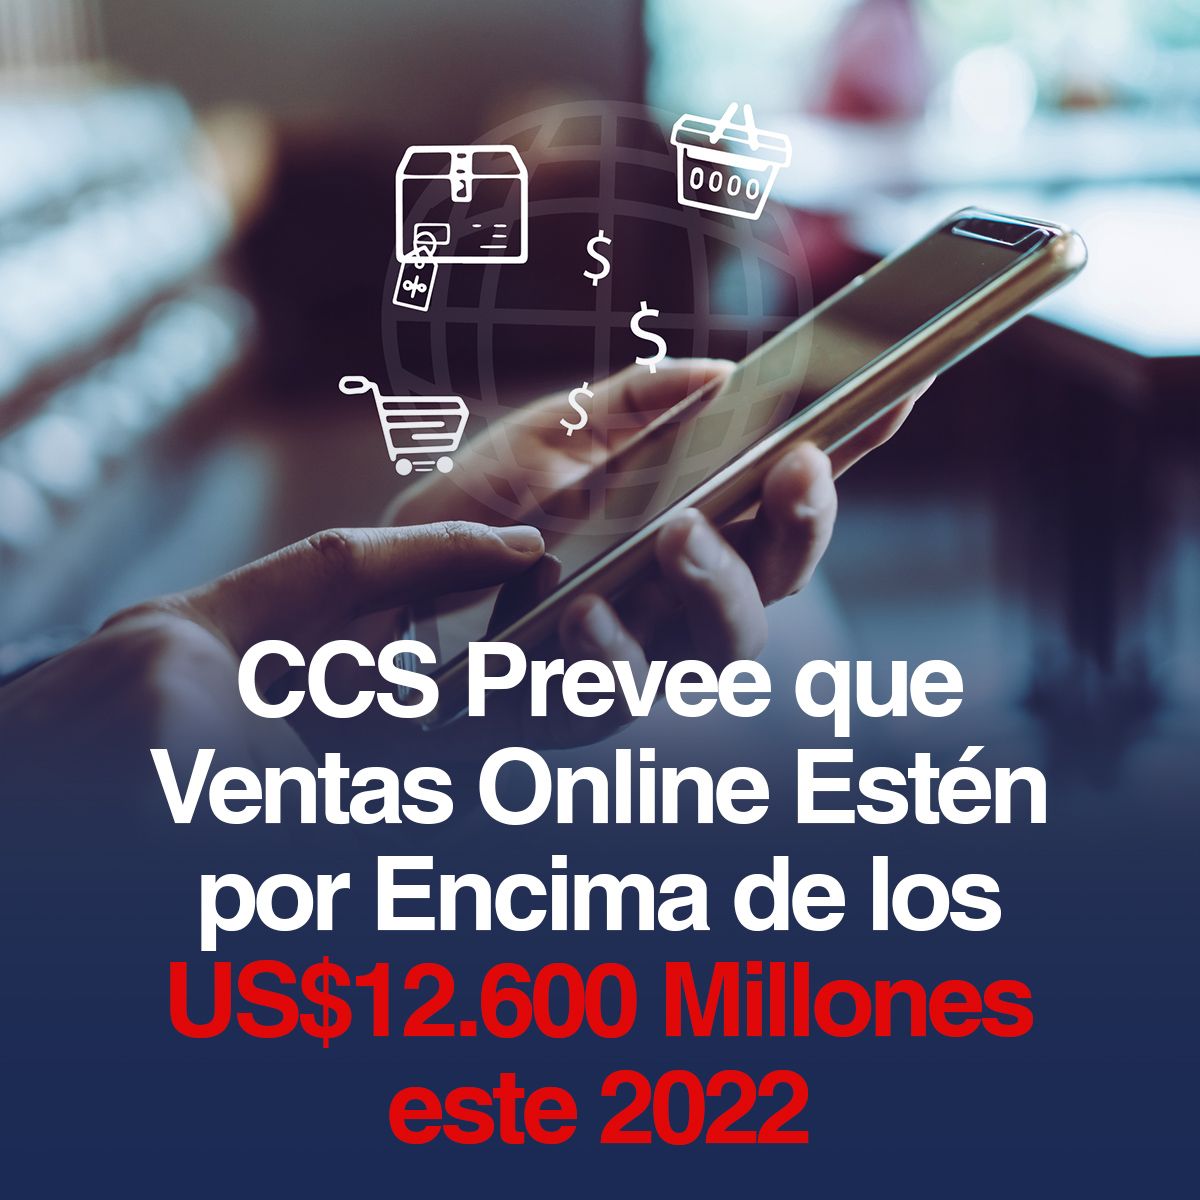 CCS Prevee que Ventas Online Estén por Encima de los US$12.600 Millones este 2022